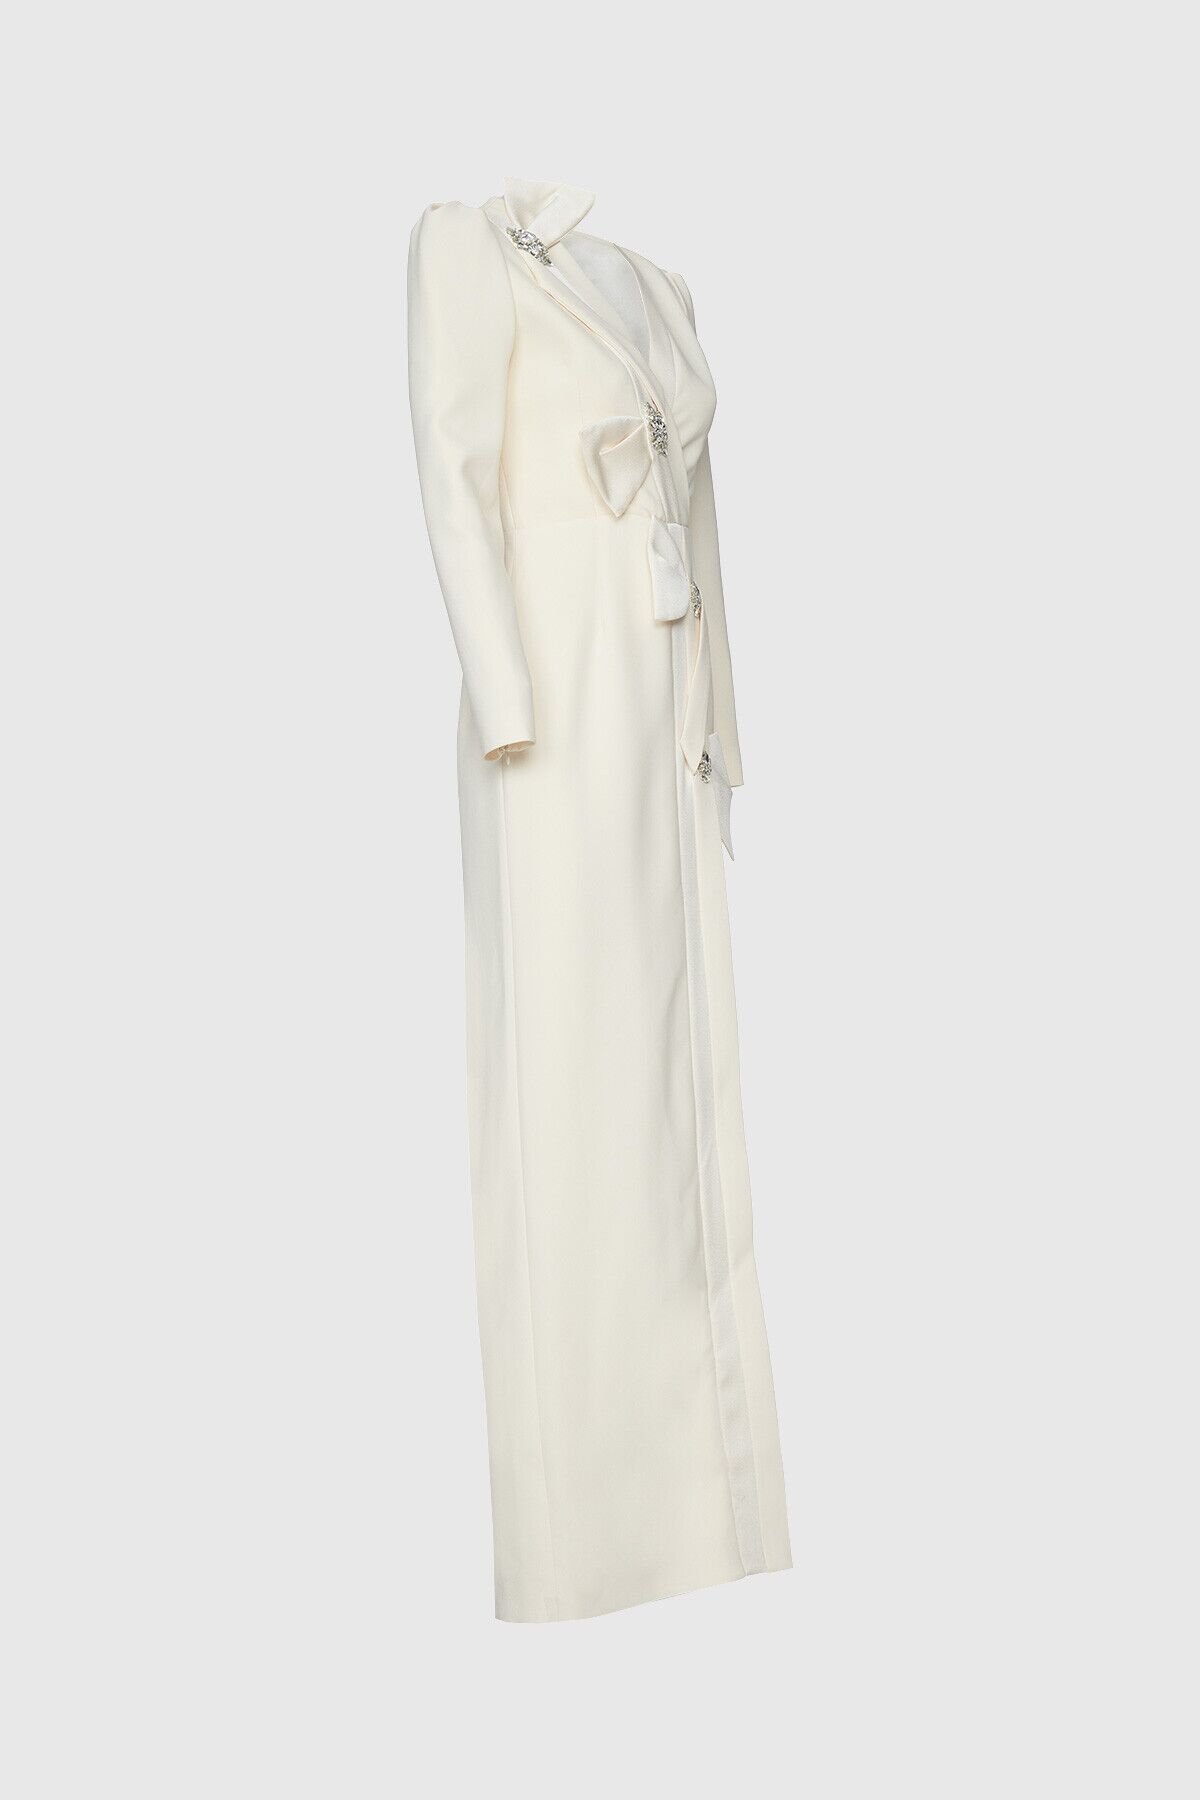 Stone Detailed Long Beige Dress